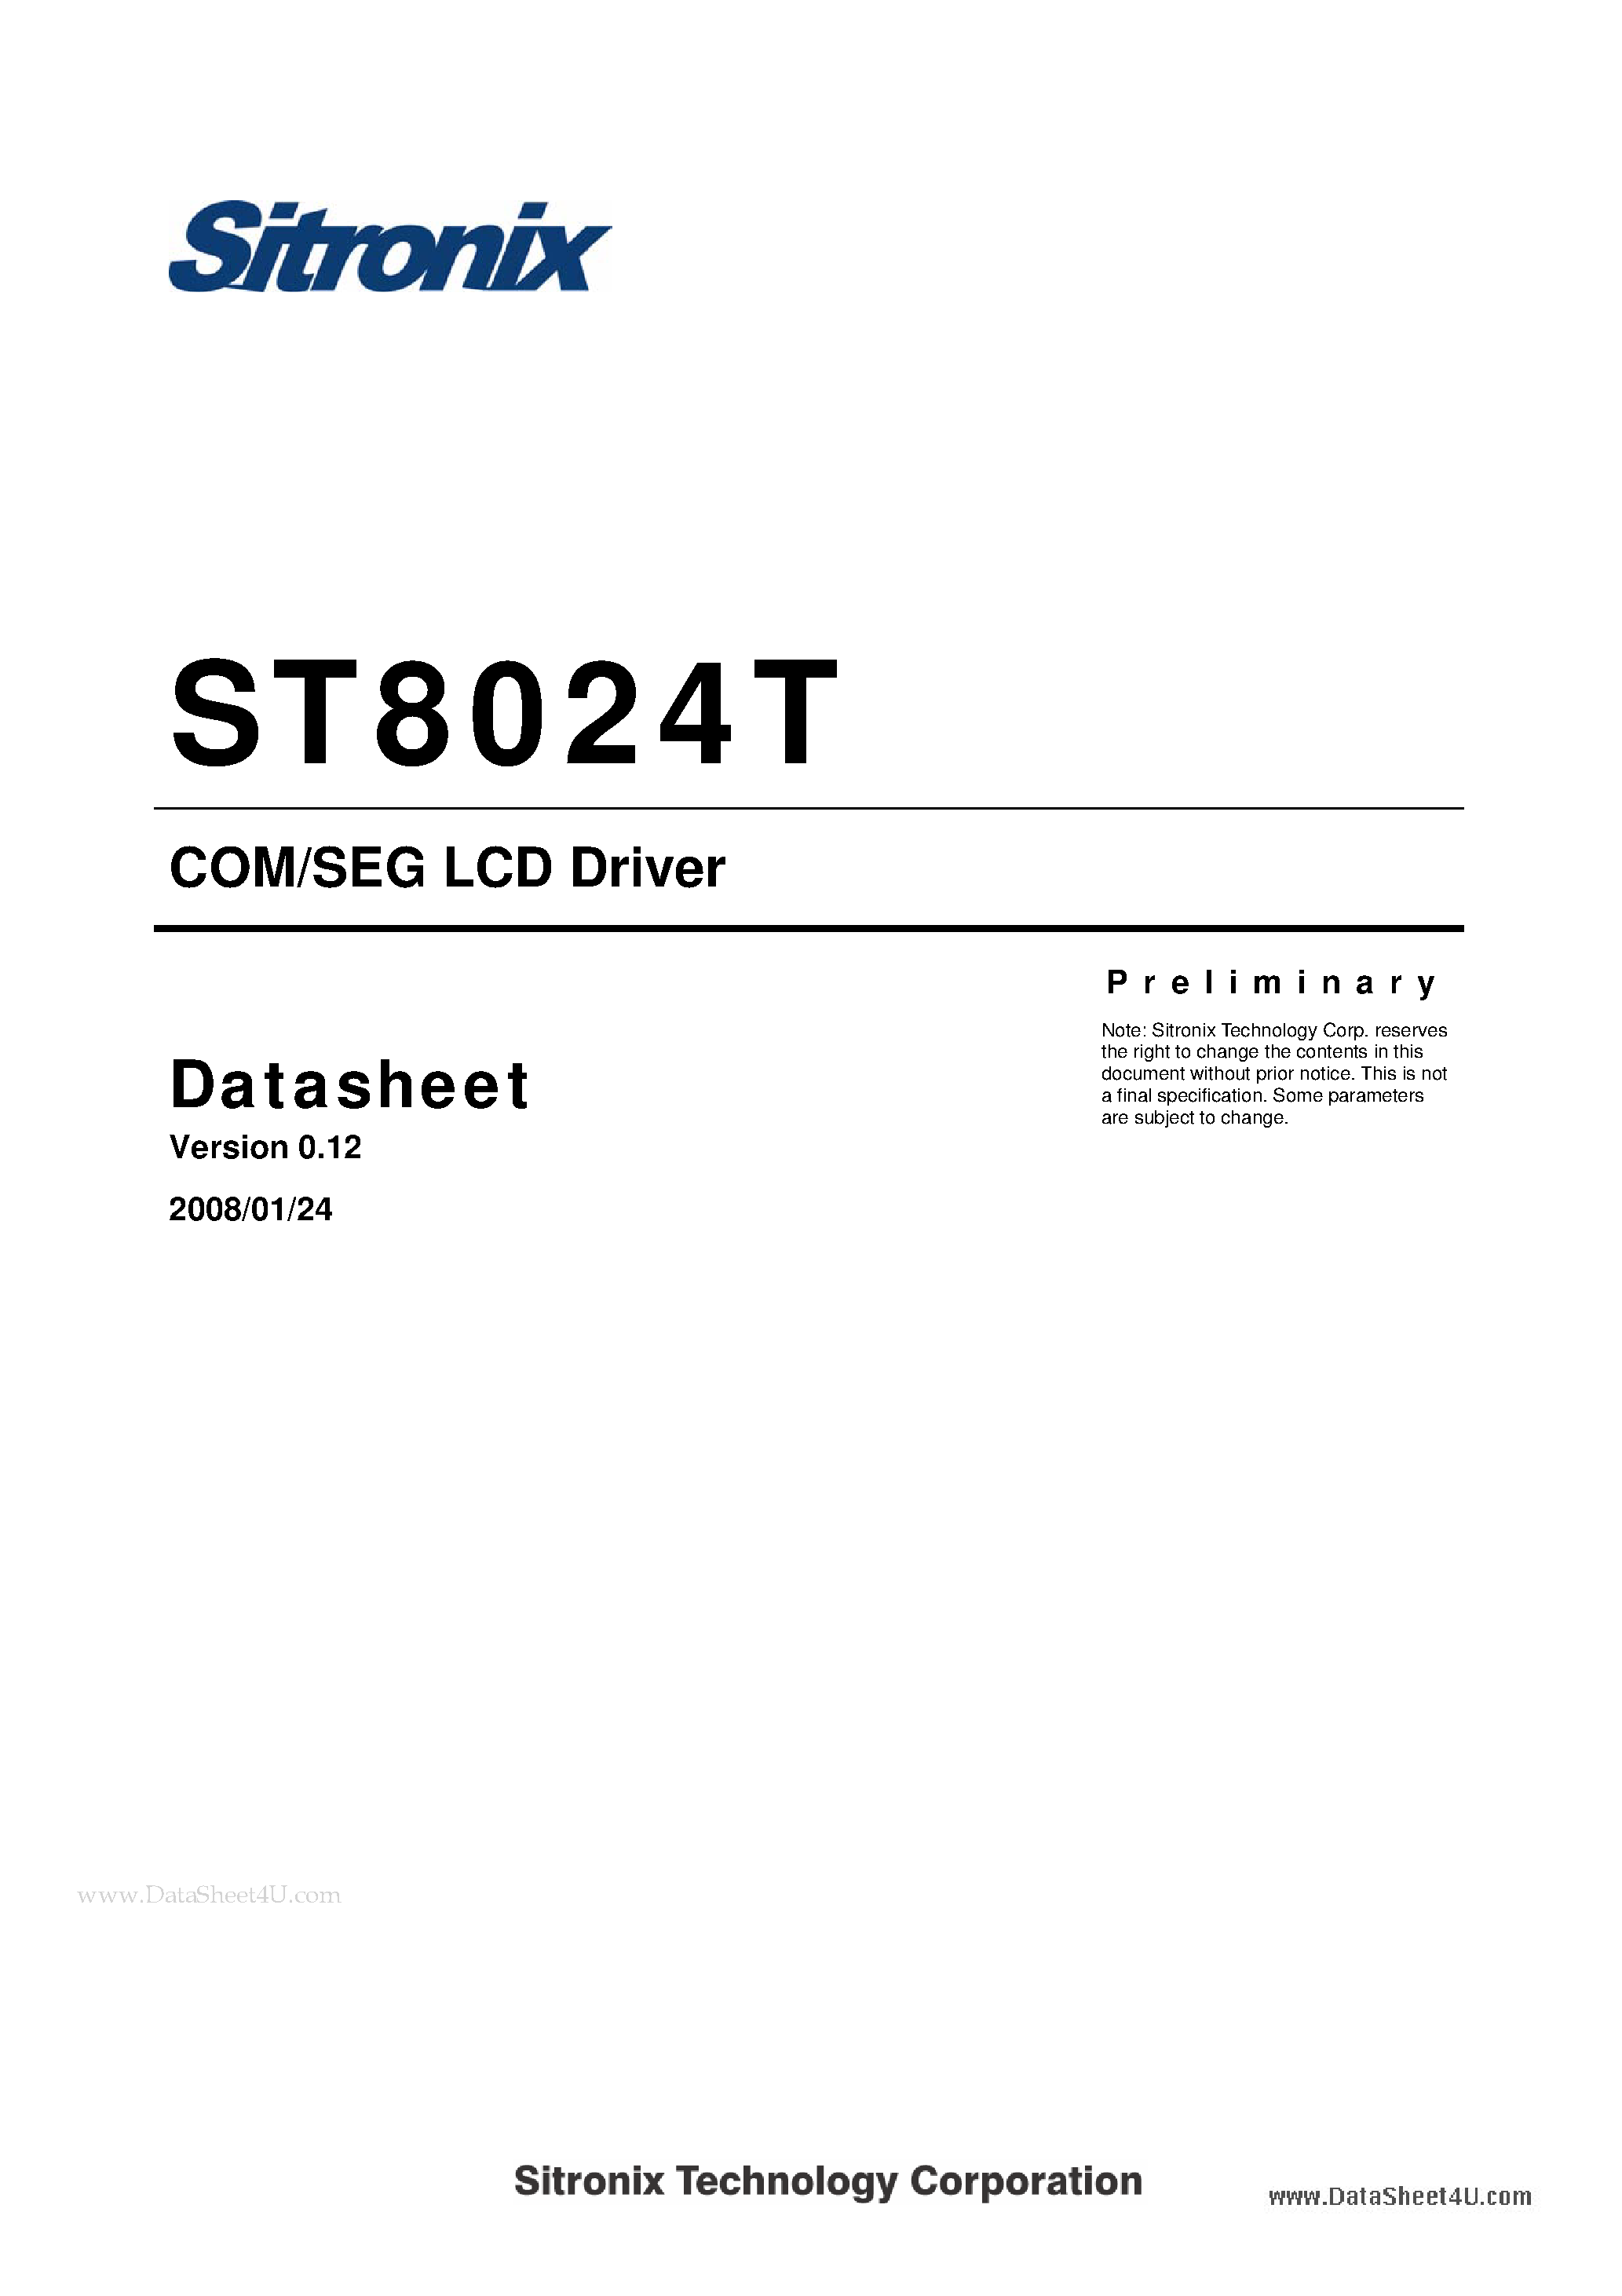 Даташит ST8024T - COM/SEG LCD Driver страница 1